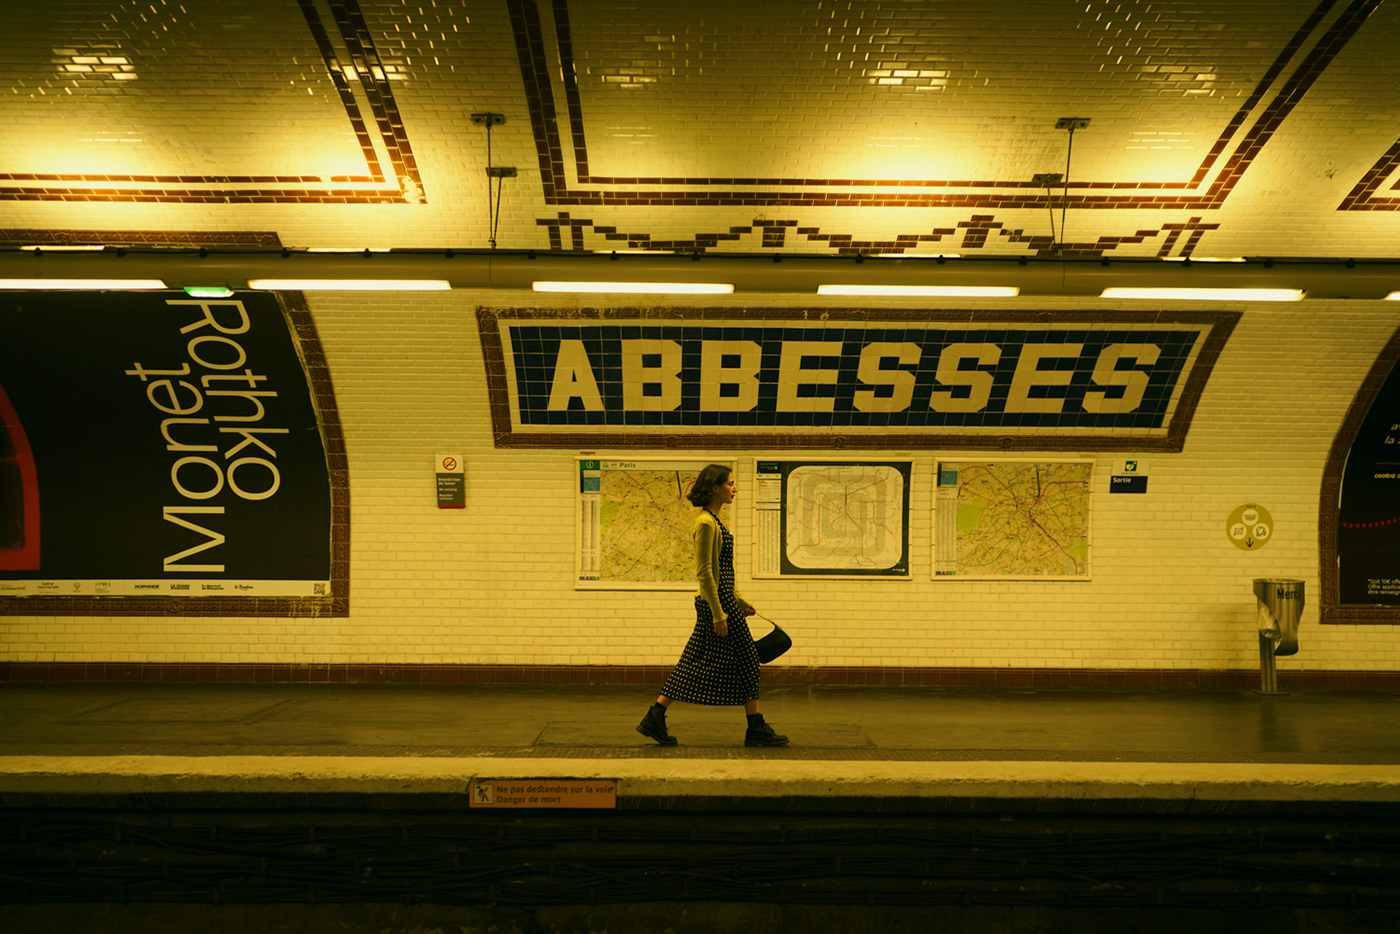 amelie Amelie Poulain Audrey Tautou metro montmartre movie Paris photo subway